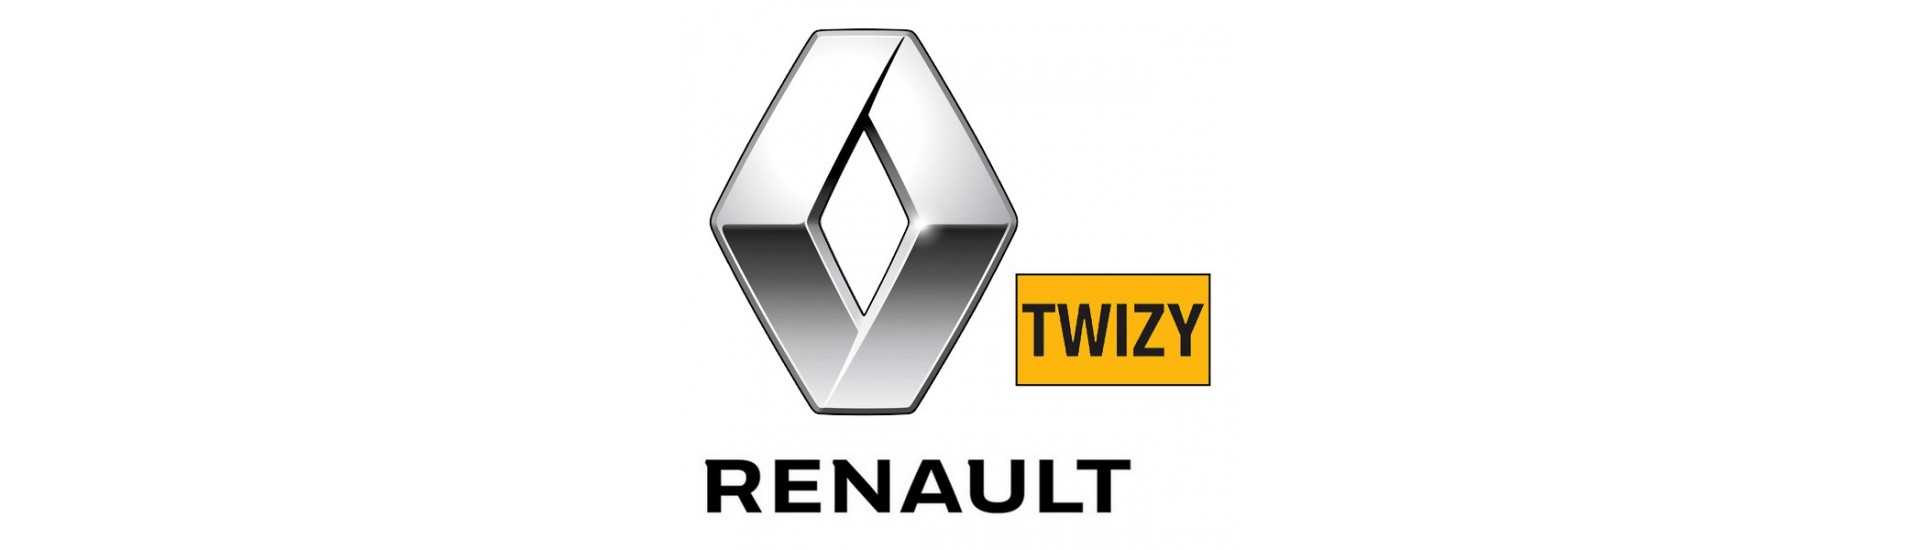 Nopeuslaatikko parhaalla hinnalla ilman lupaa Renault Twizy